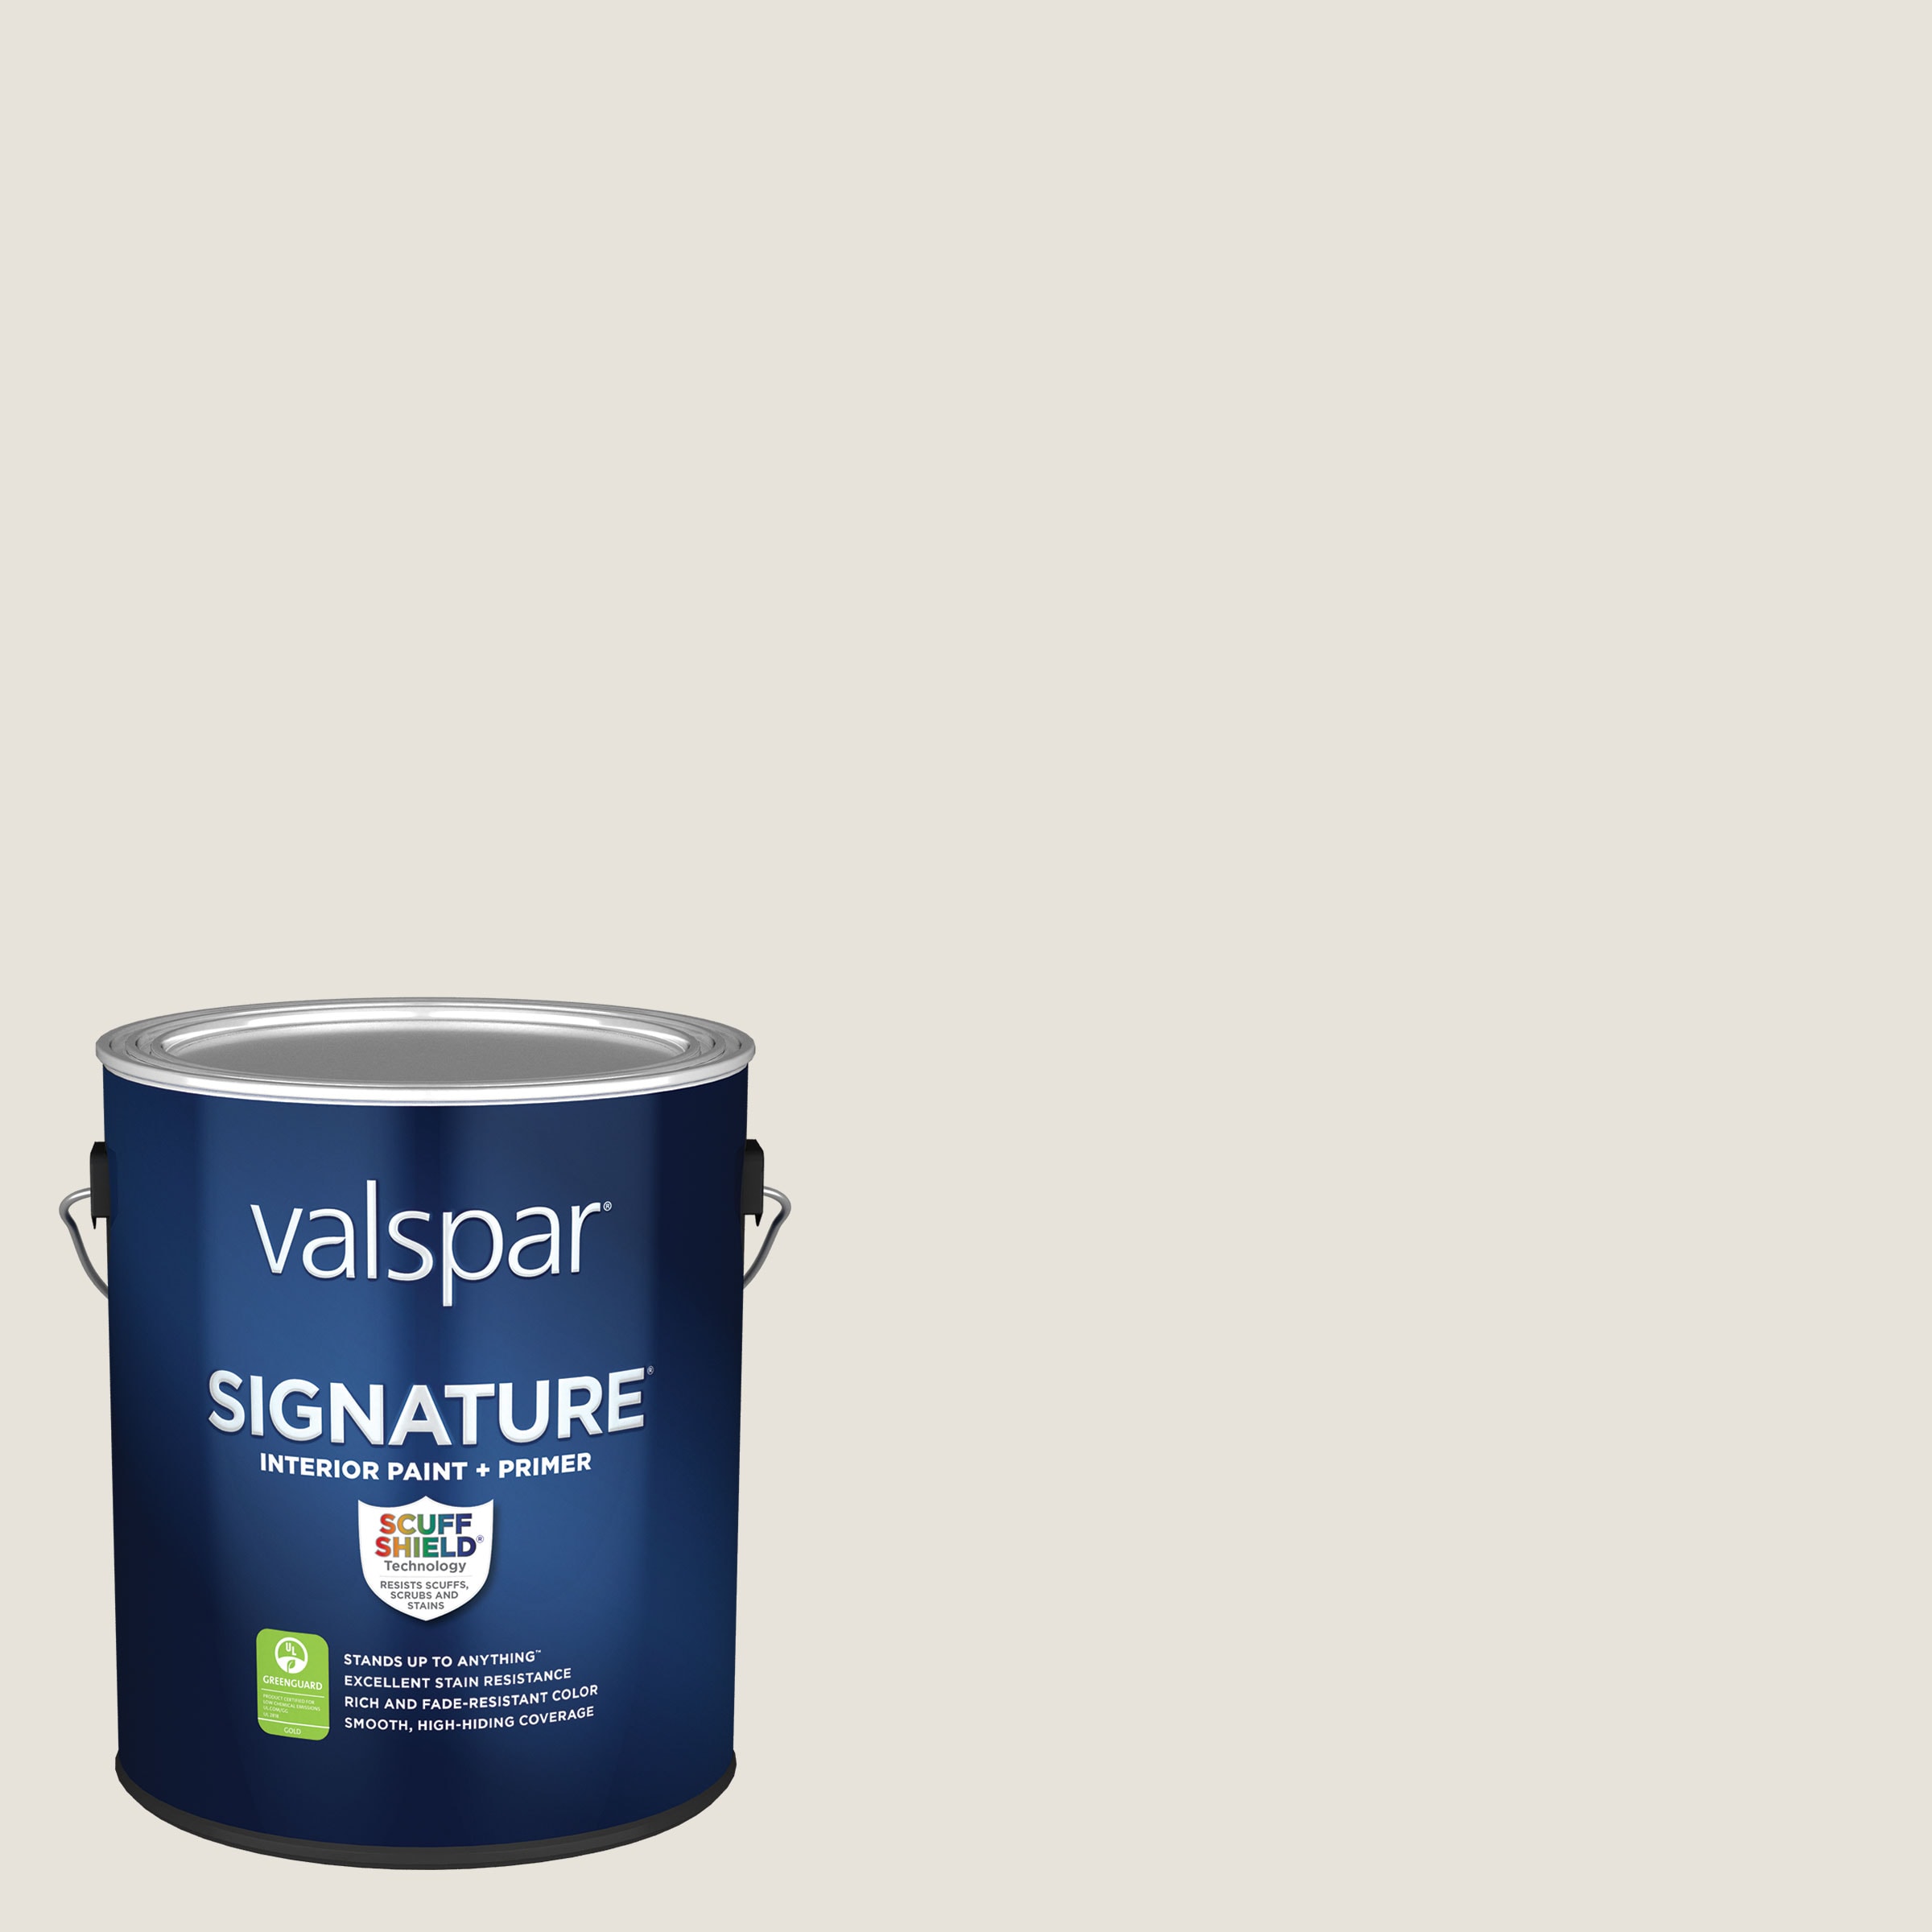 Valspar Semi-gloss Perfect White Latex Interior Paint + Primer (1